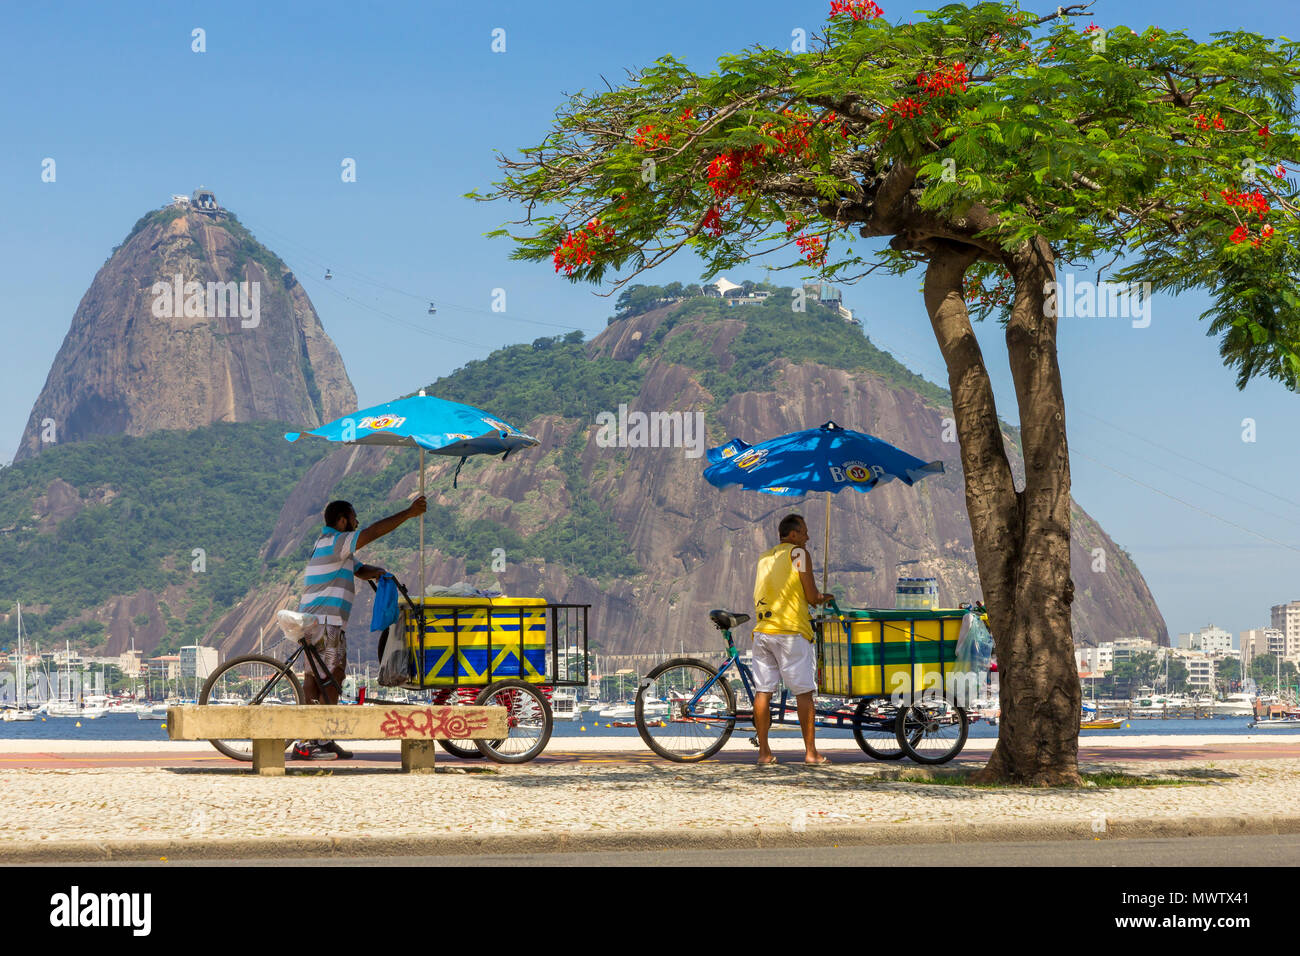 Les vendeurs de rue debout avec leurs bicyclettes au Botafogo avec vue sur le Pain de Sucre, Rio de Janeiro, Brésil, Amérique du Sud Banque D'Images